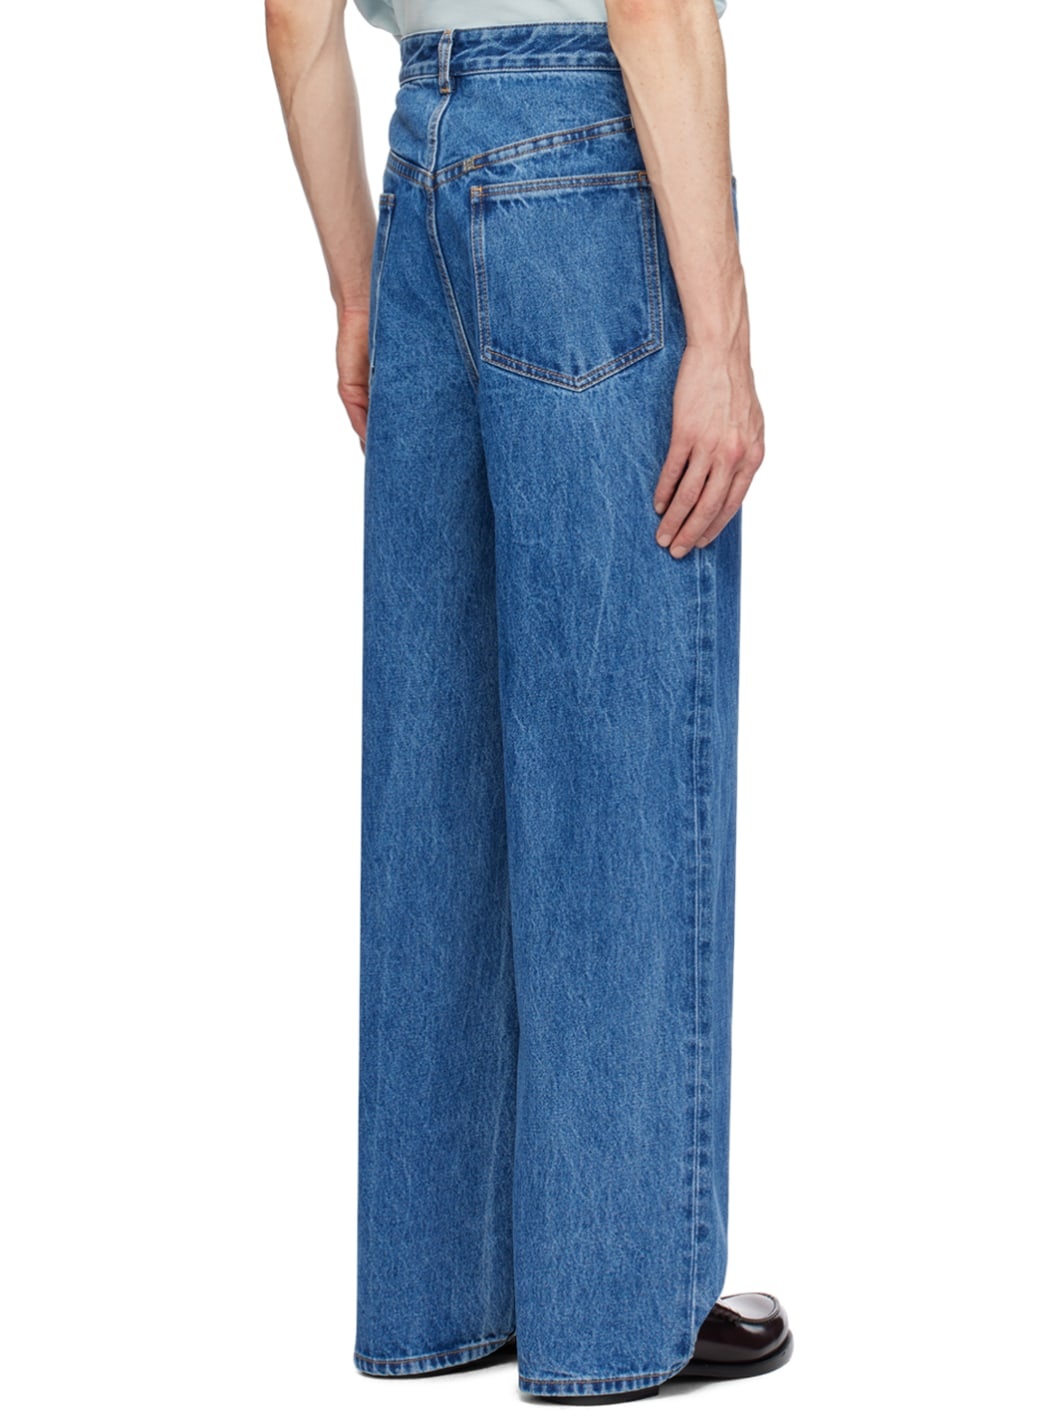 Blue Low Crotch Jeans - 3